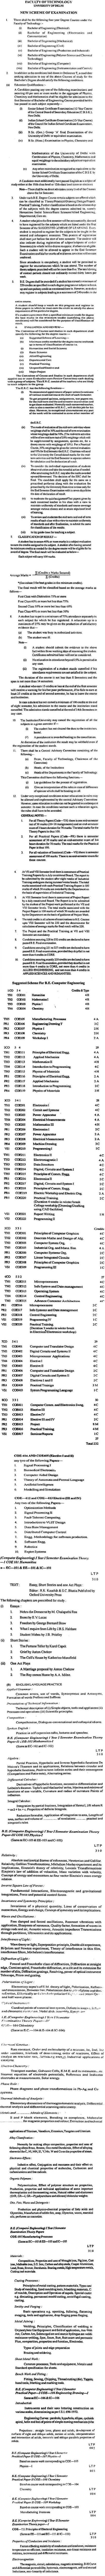 NSIT: Syllabus - Computer Engineering